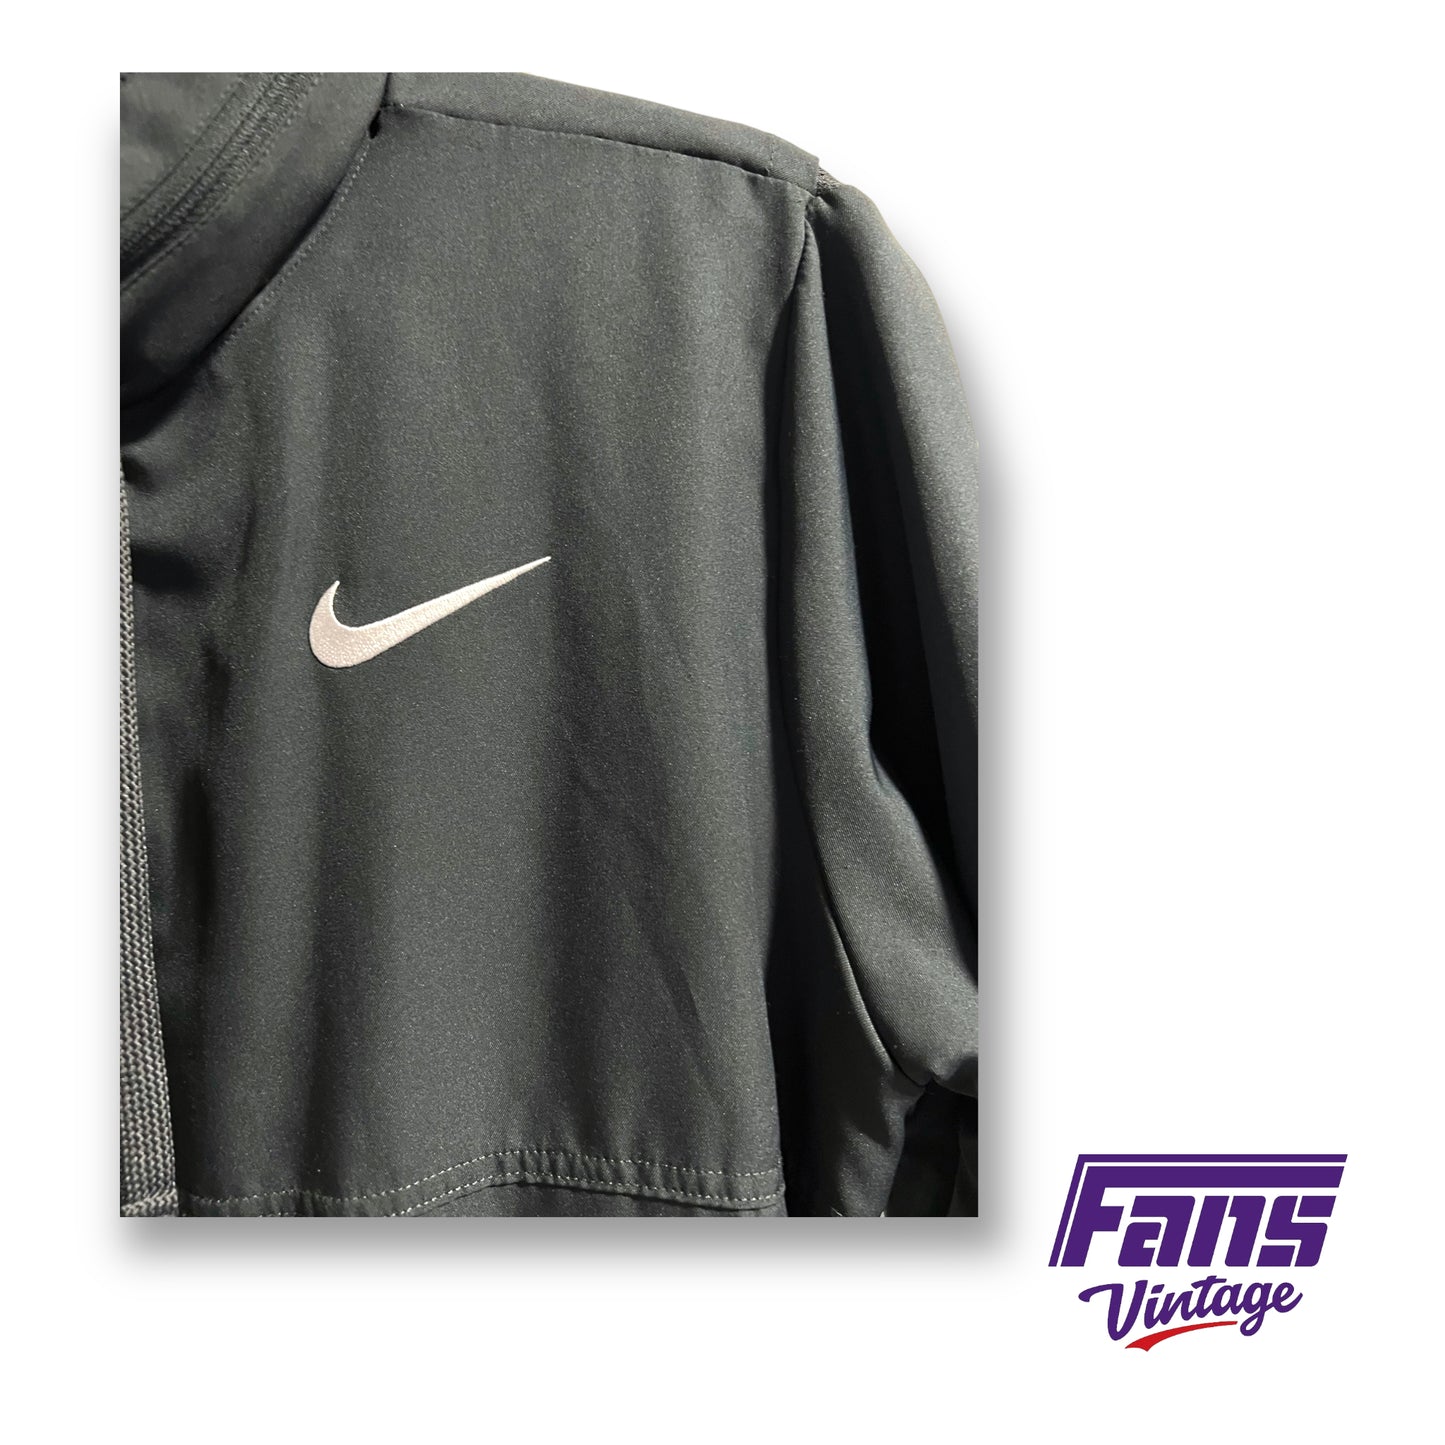 Nike TCU Basketball team issued full-zip jacket with flex hoodie